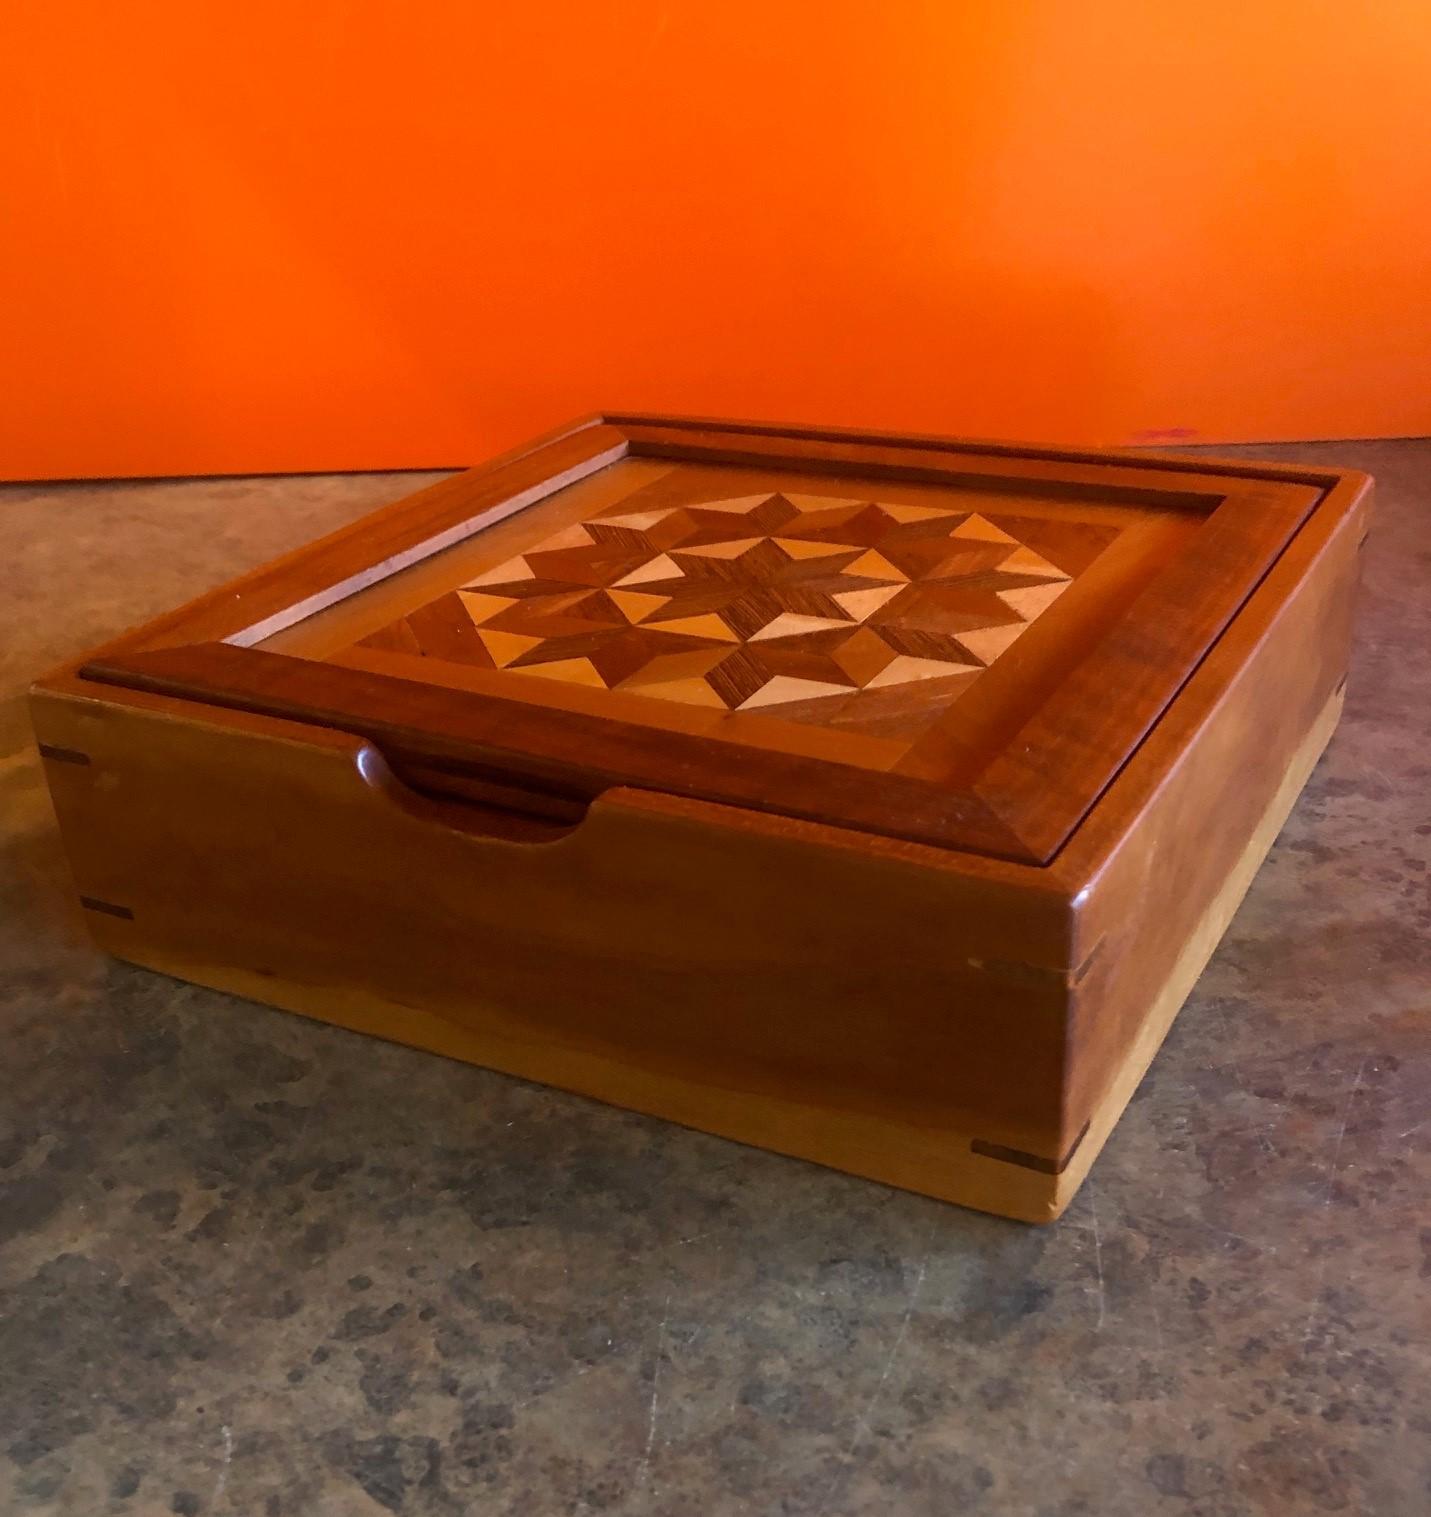 unique wooden boxes